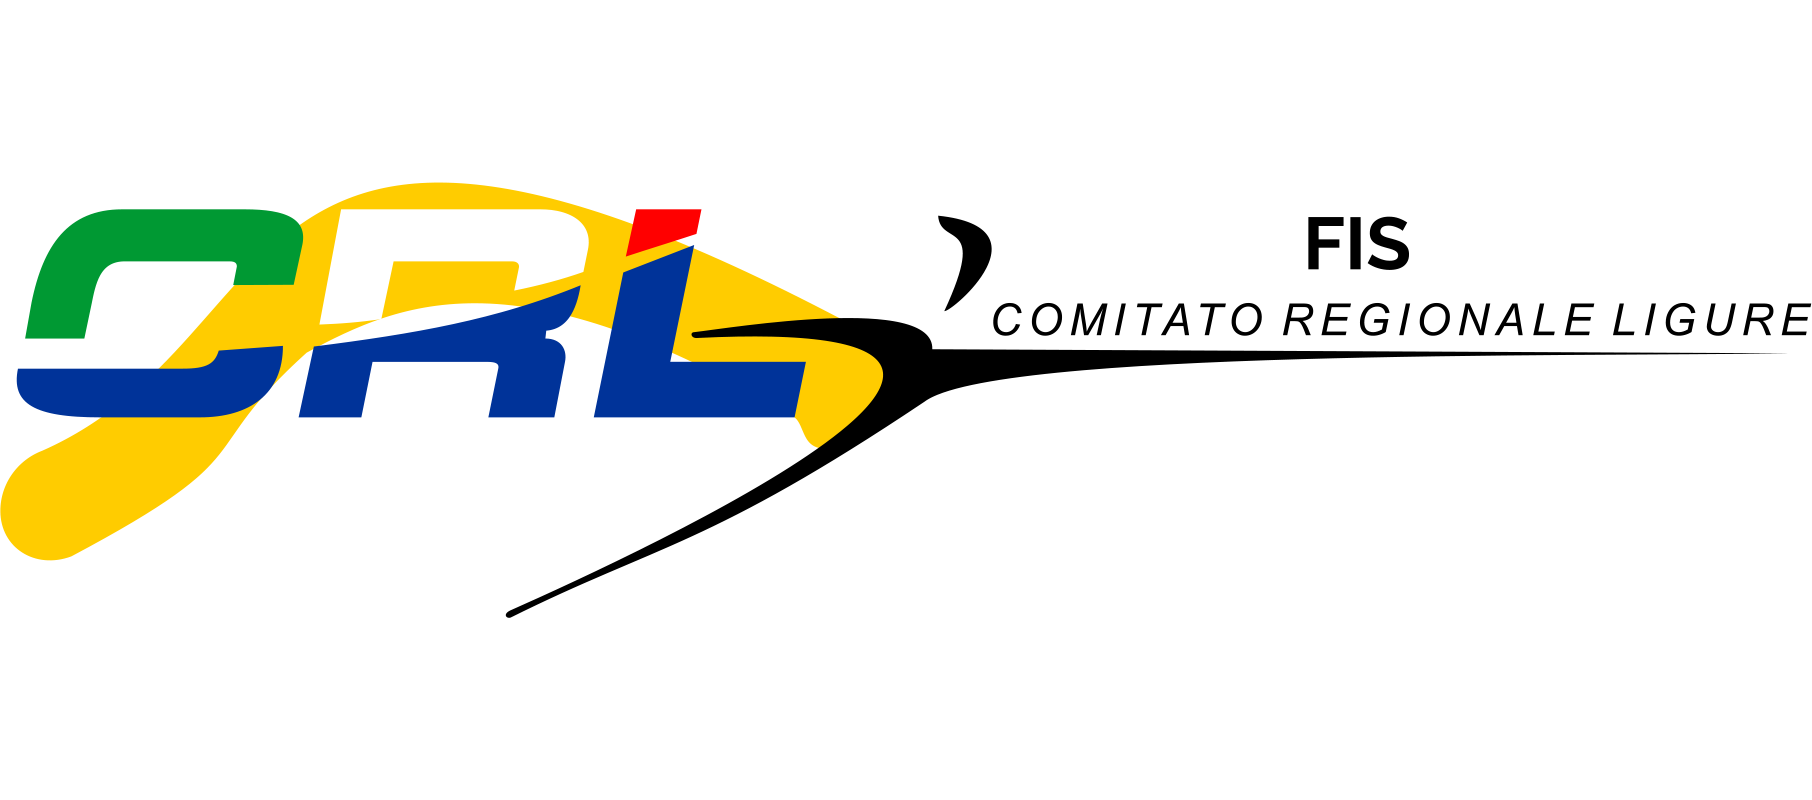 liguria logo